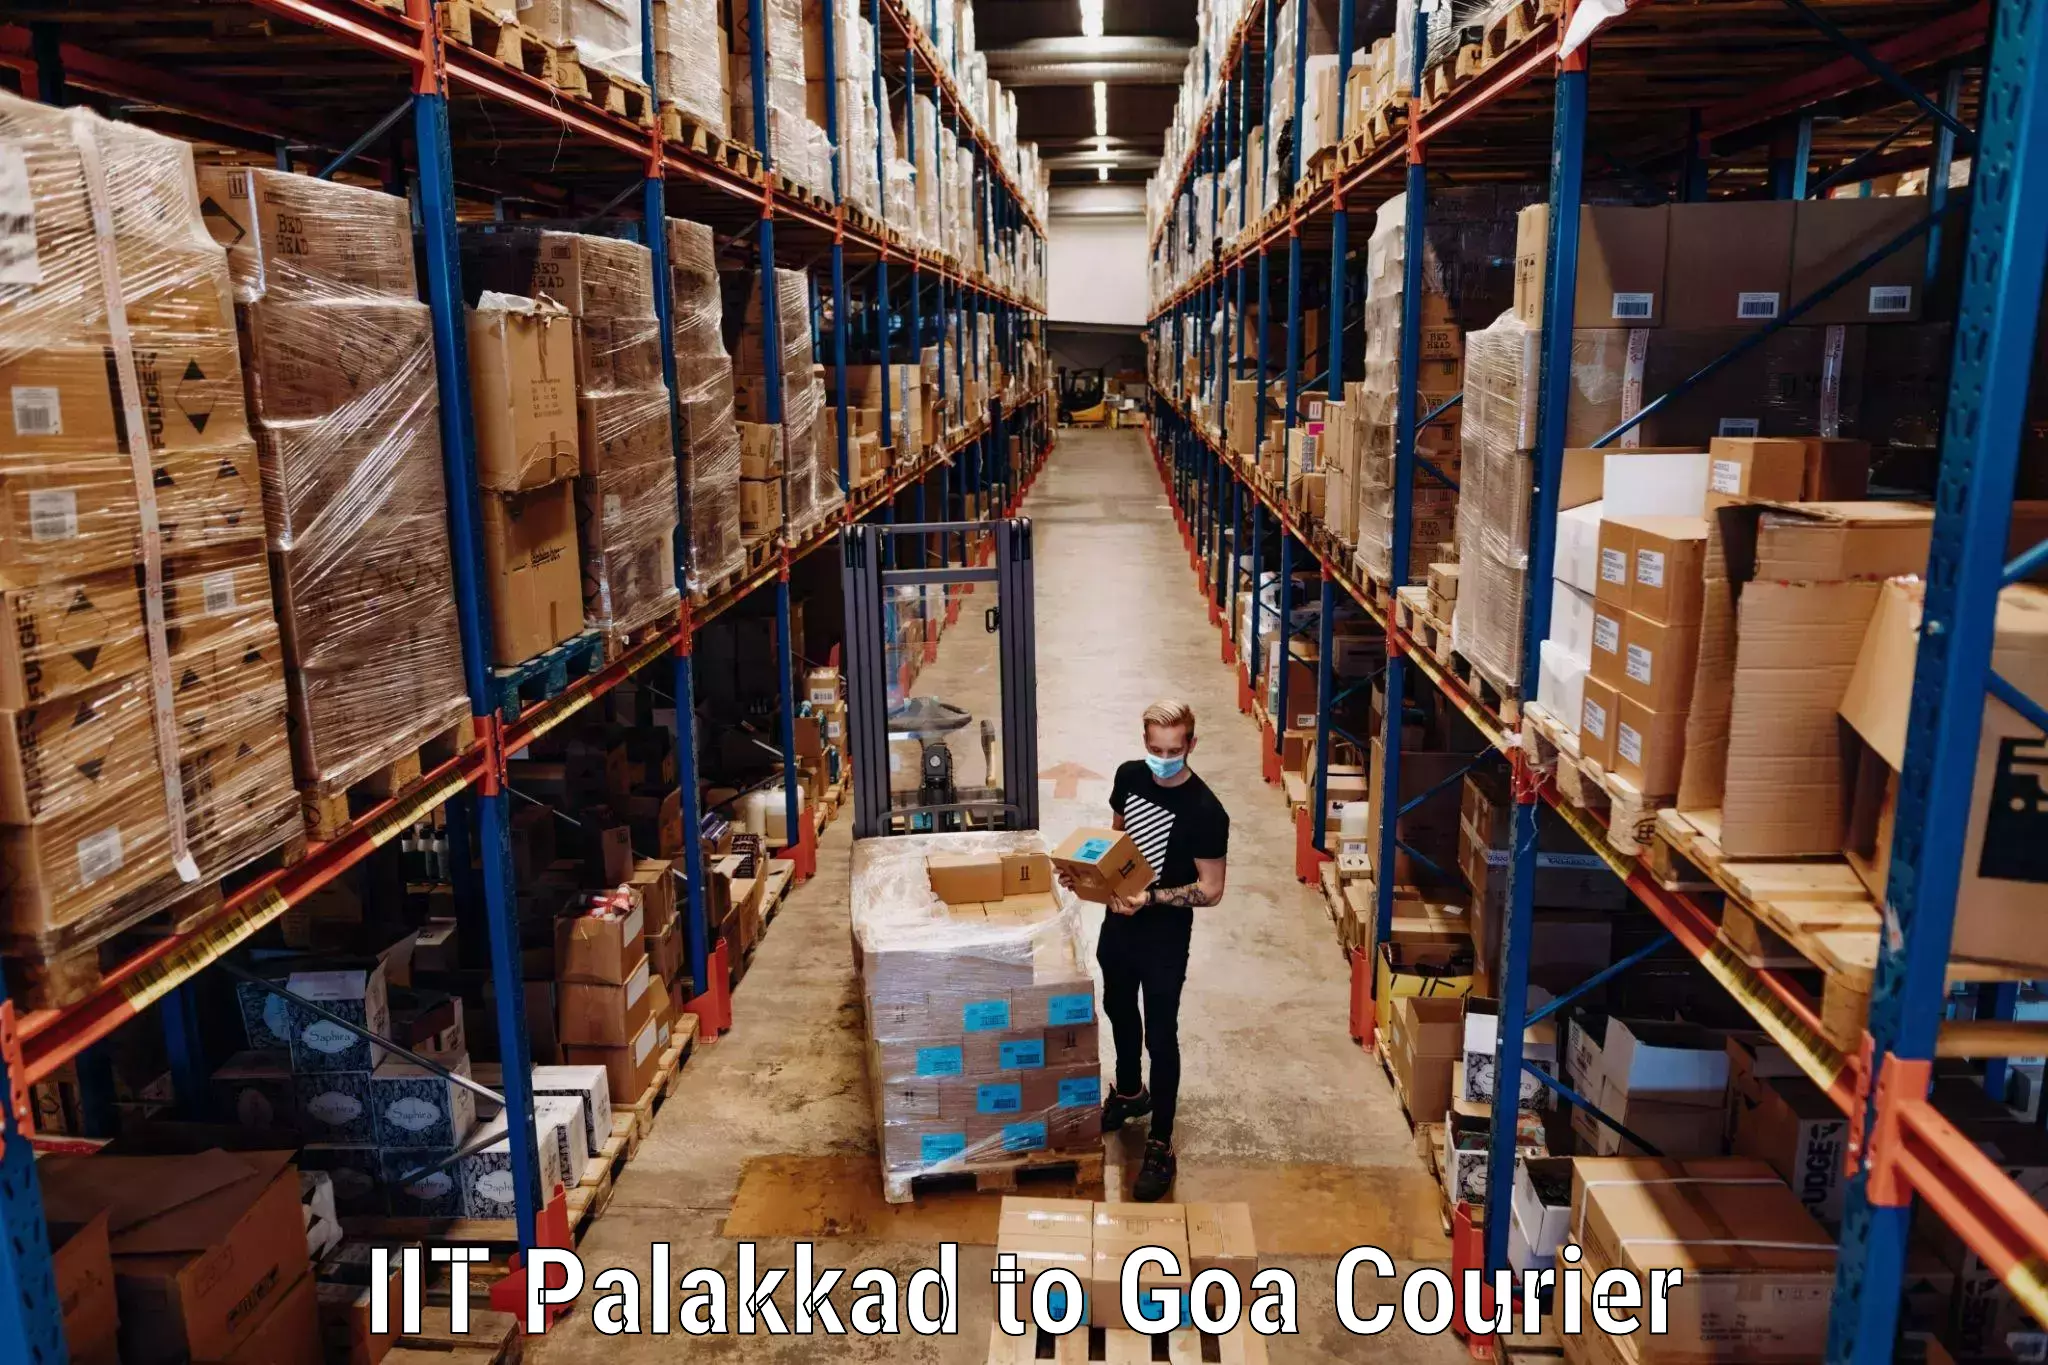 Luggage transit service IIT Palakkad to IIT Goa